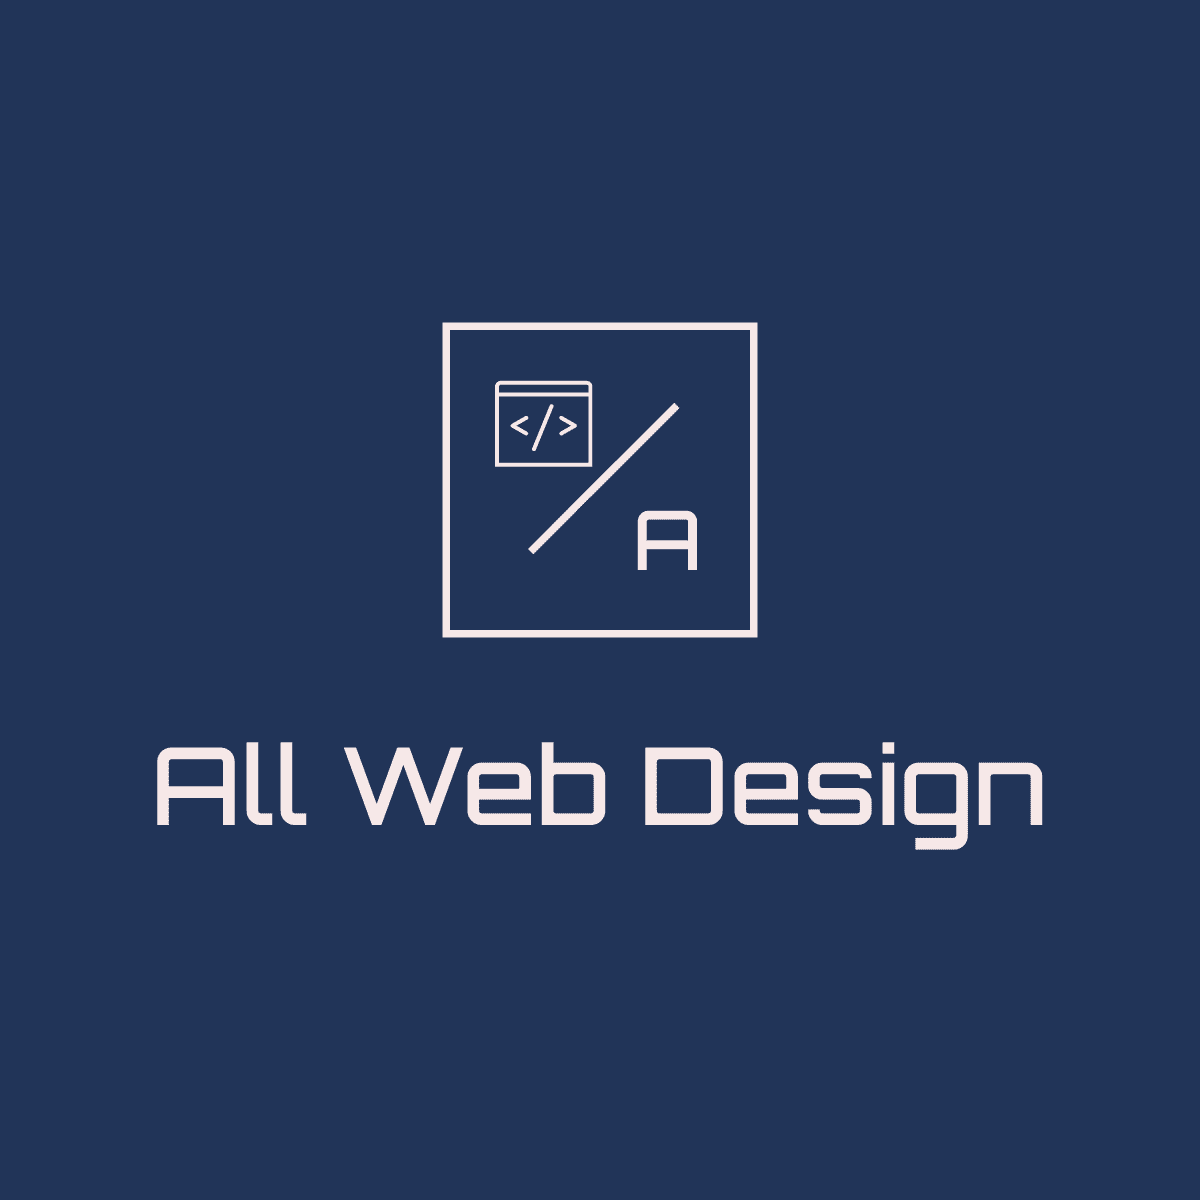 All Web Design